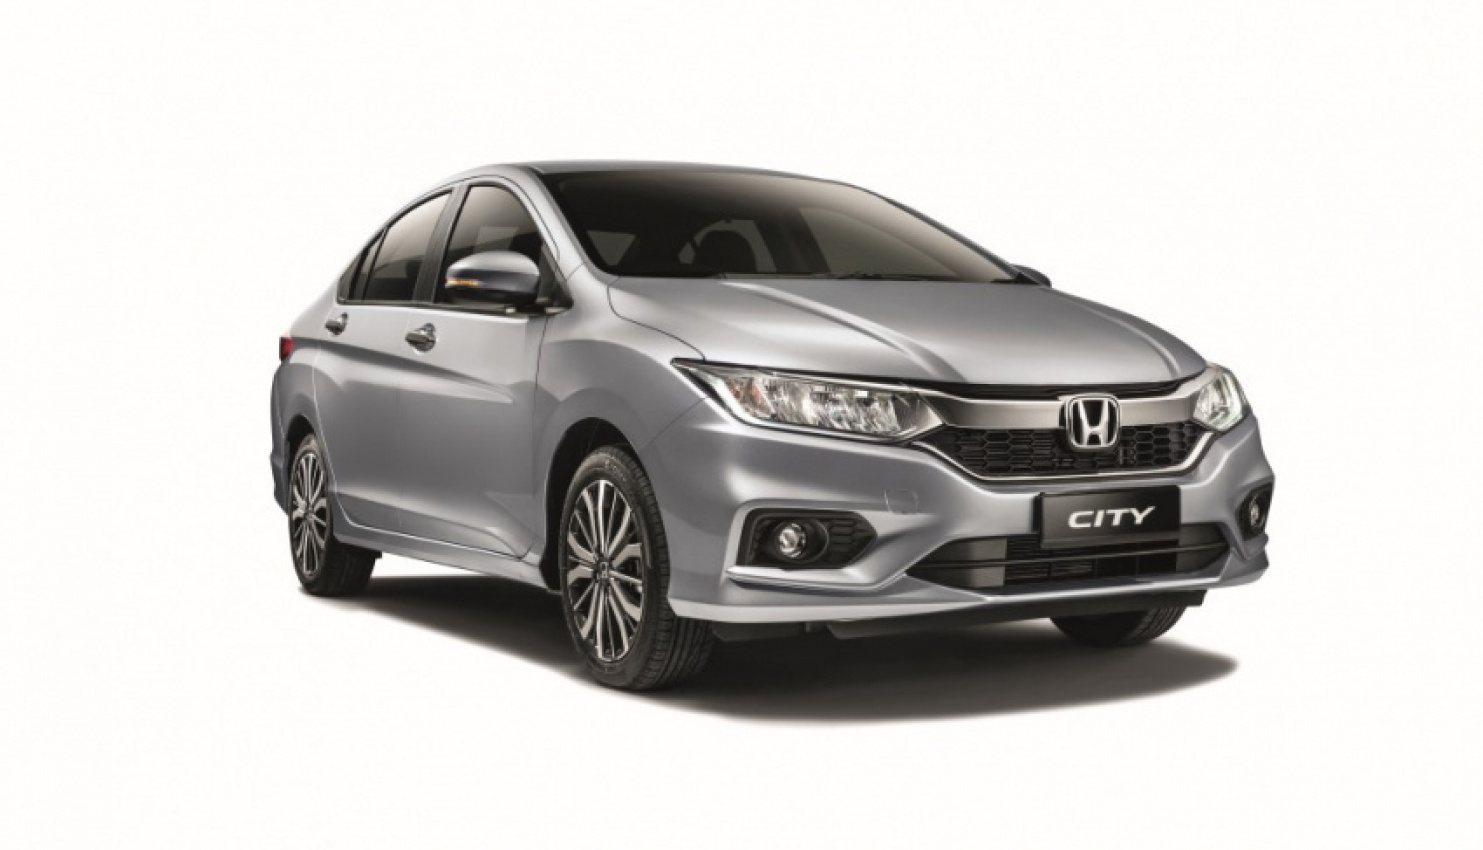 autos, cars, honda, autos honda, honda city, honda city hits milestone sales of 300,000 units in malaysia